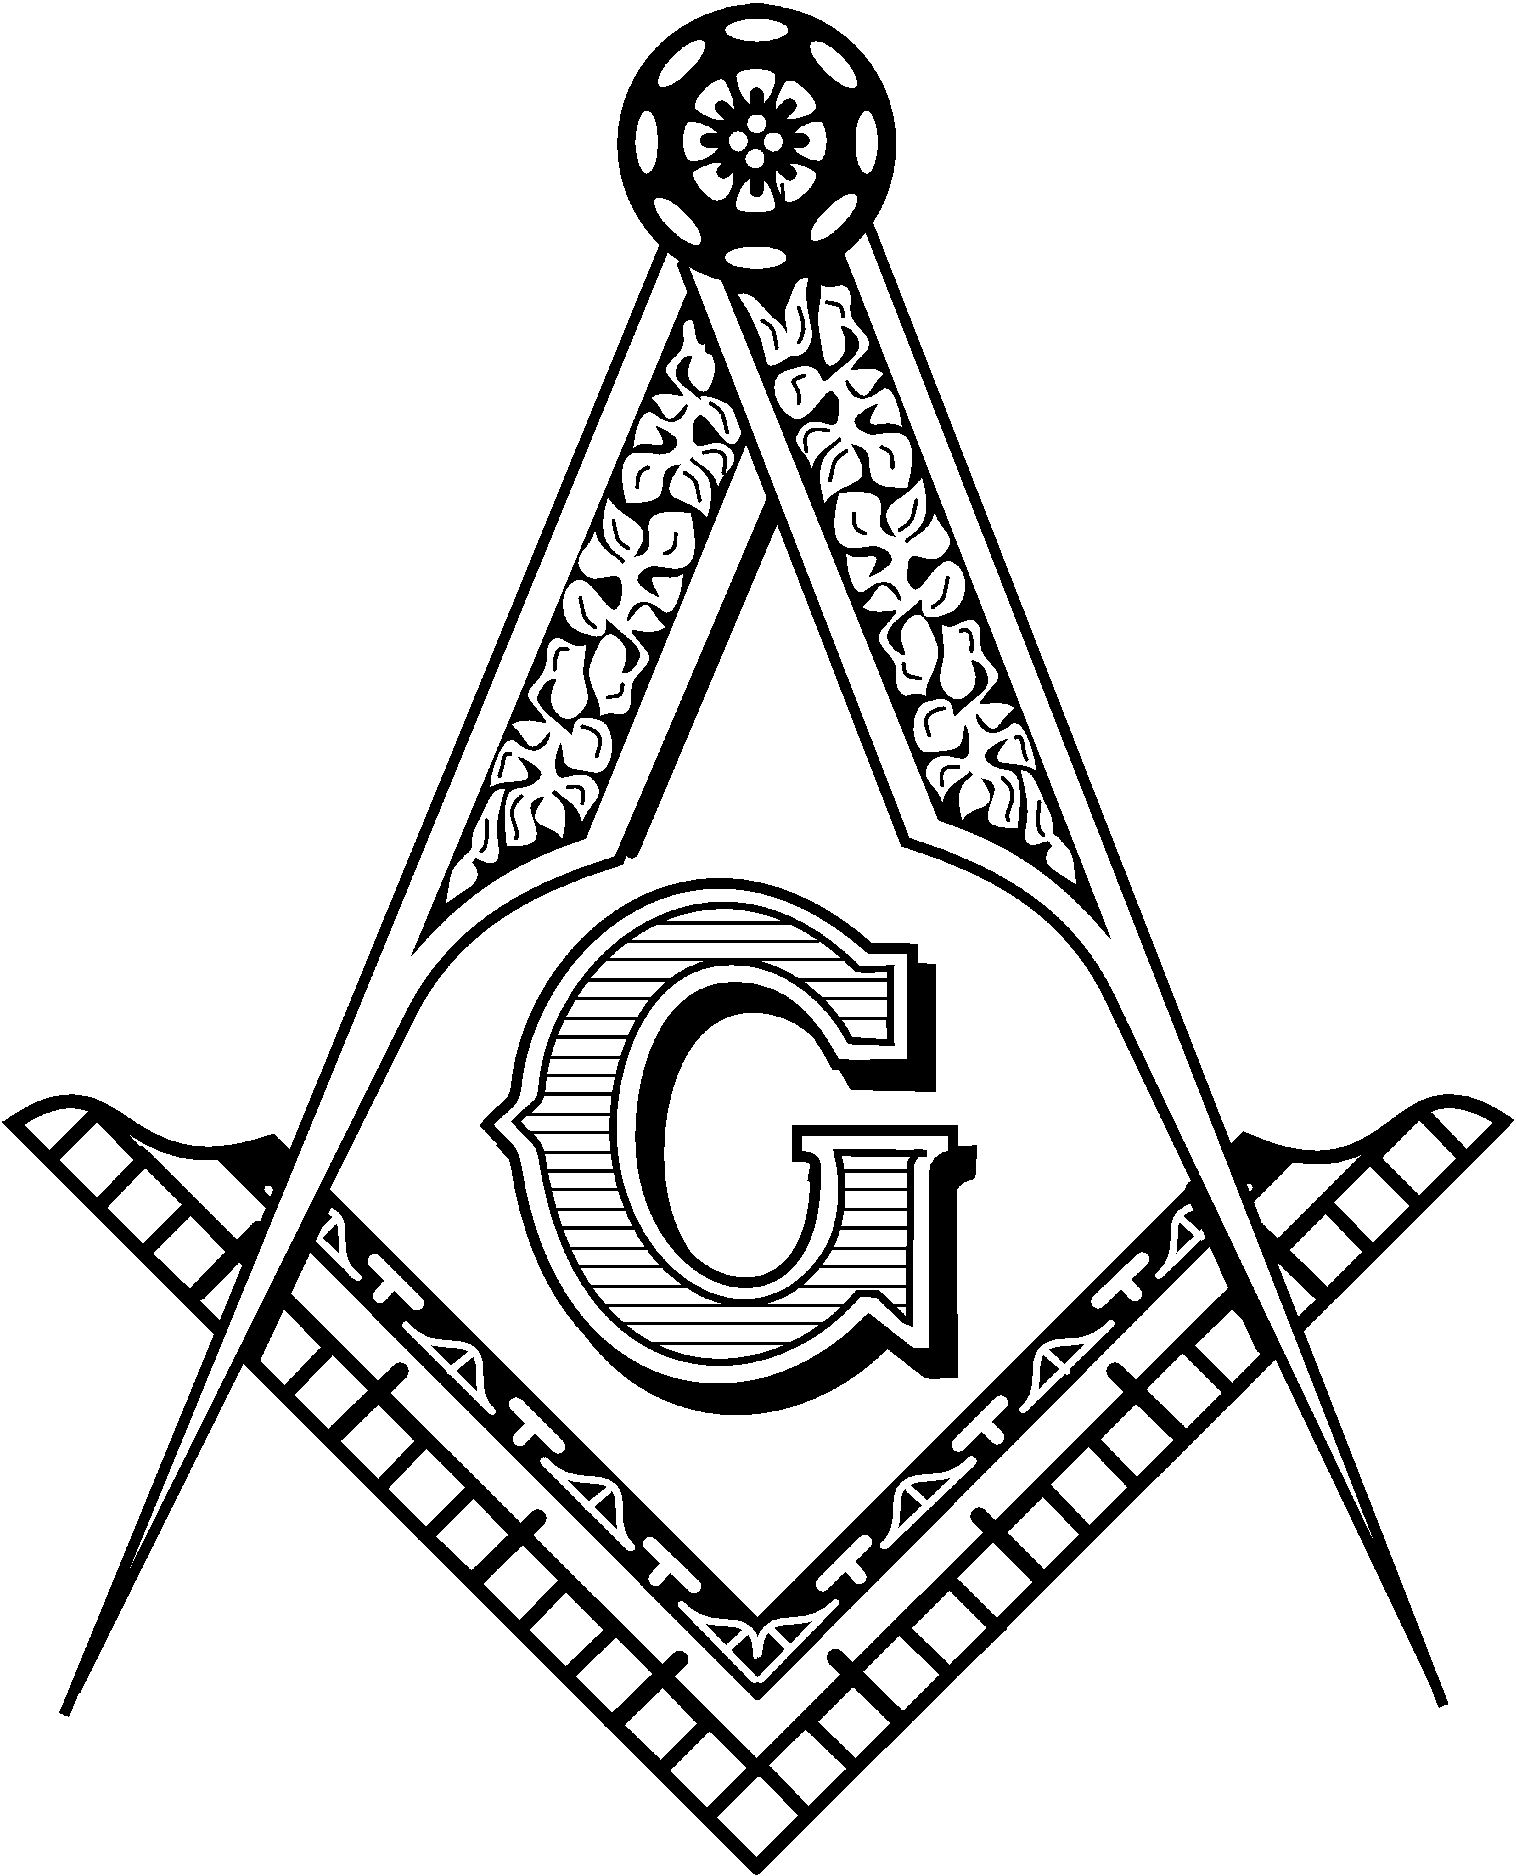 Freemasonry Is The World